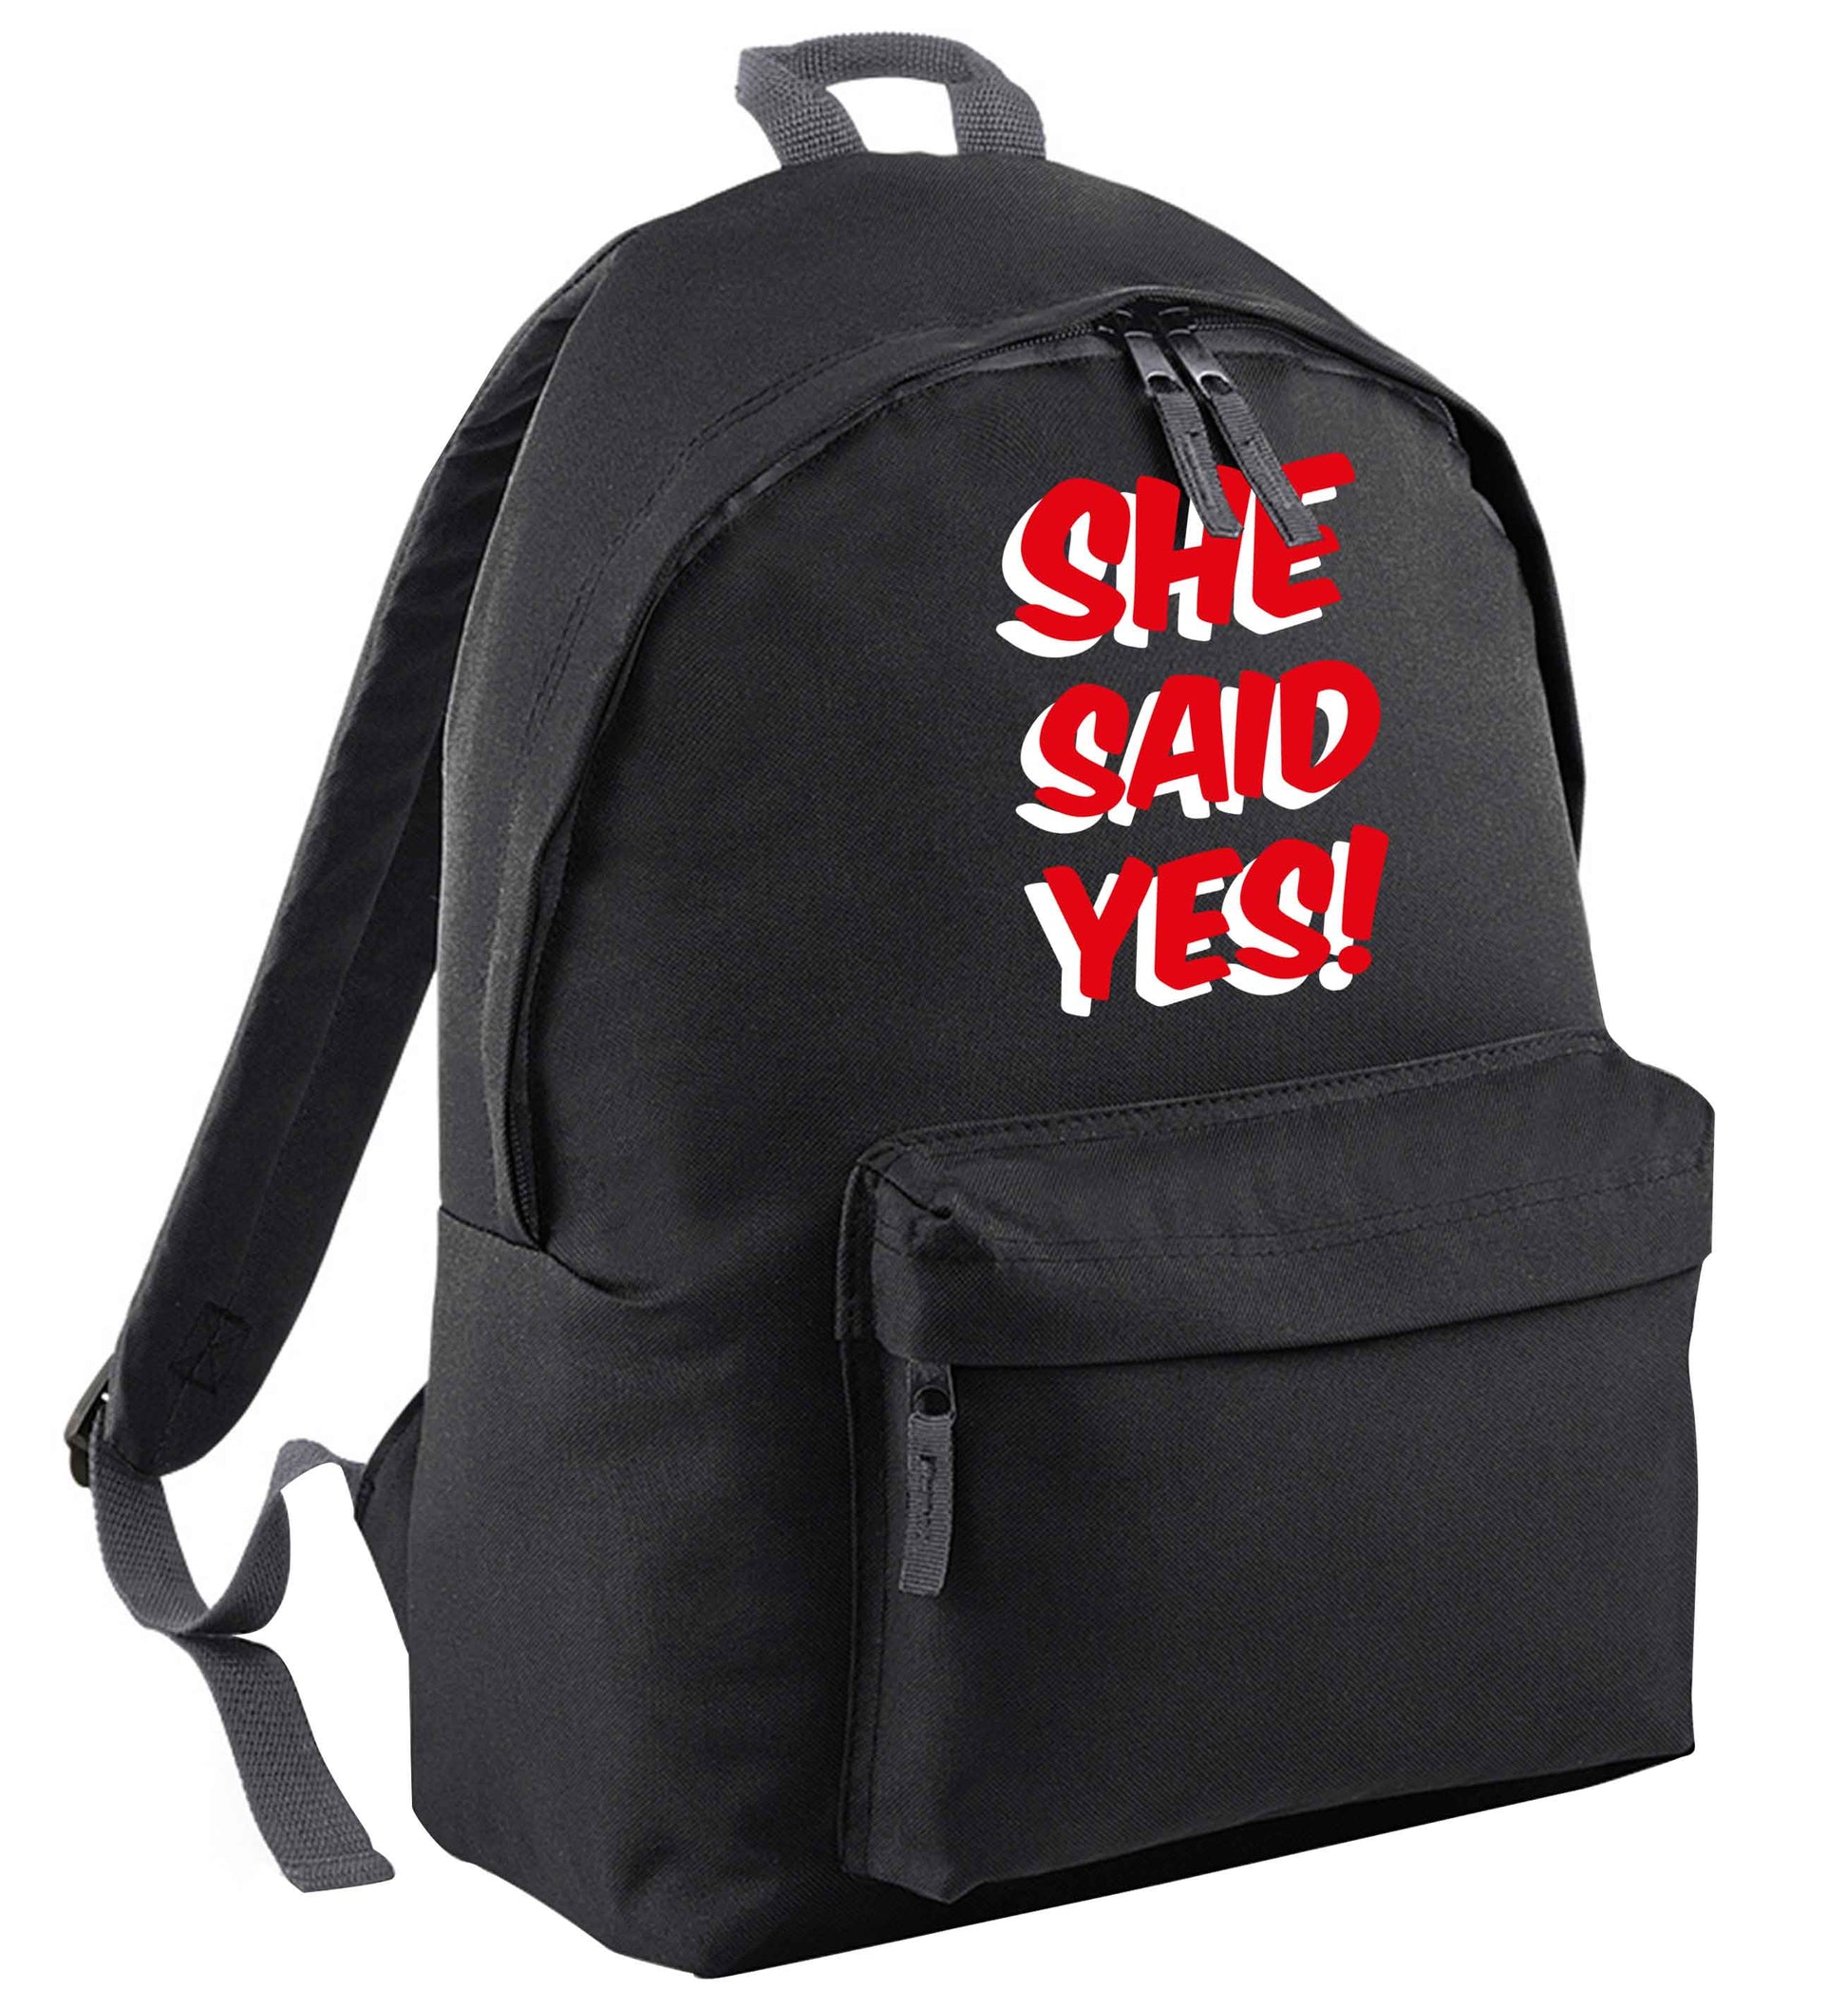 She said yes black adults backpack